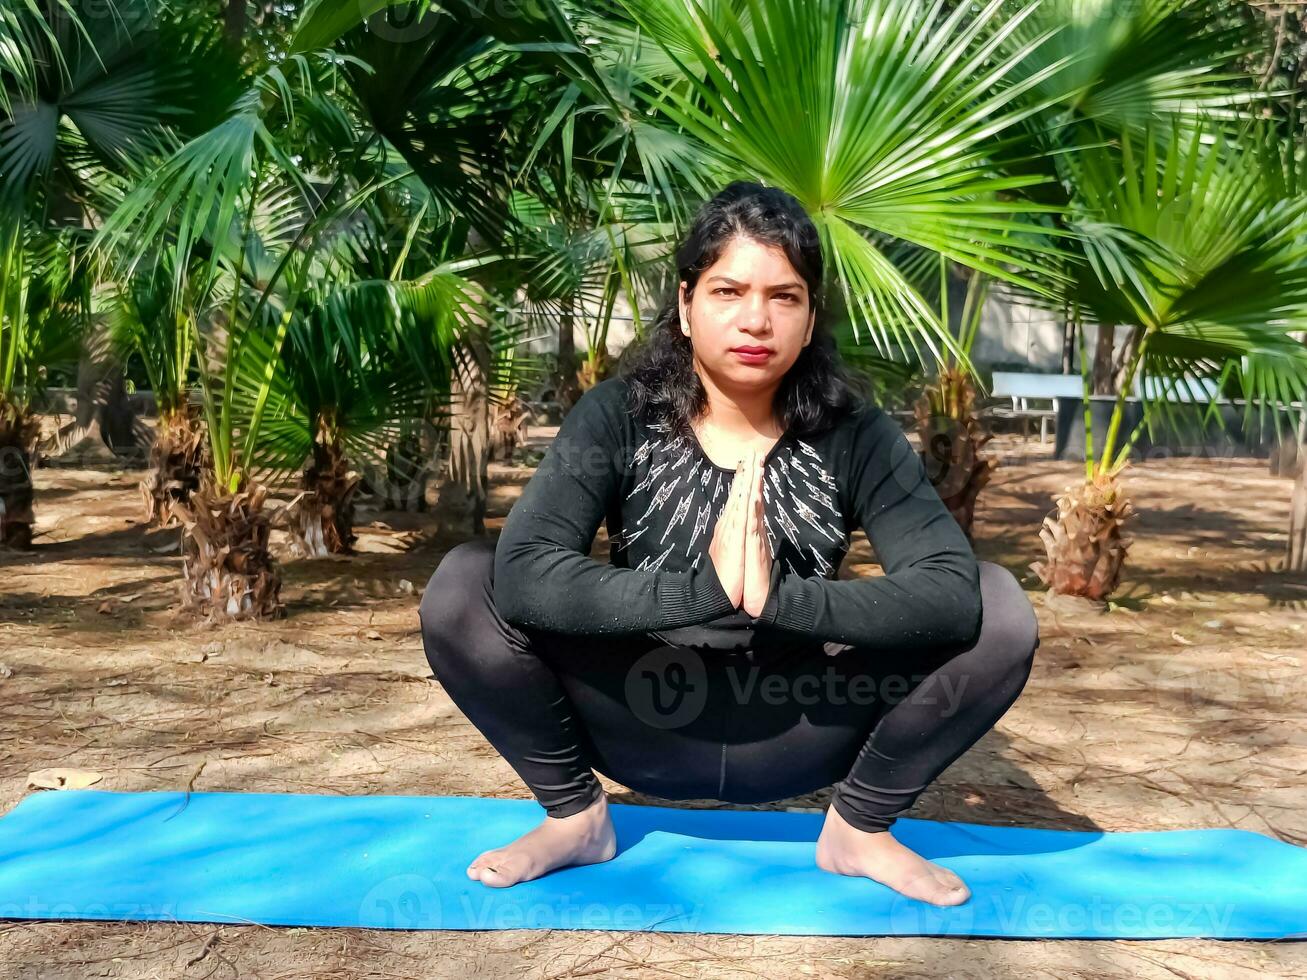 jovem indiana praticando ioga ao ar livre em um parque. linda garota pratica pose de ioga básica. calma e relaxamento, felicidade feminina. poses básicas de ioga ao ar livre foto